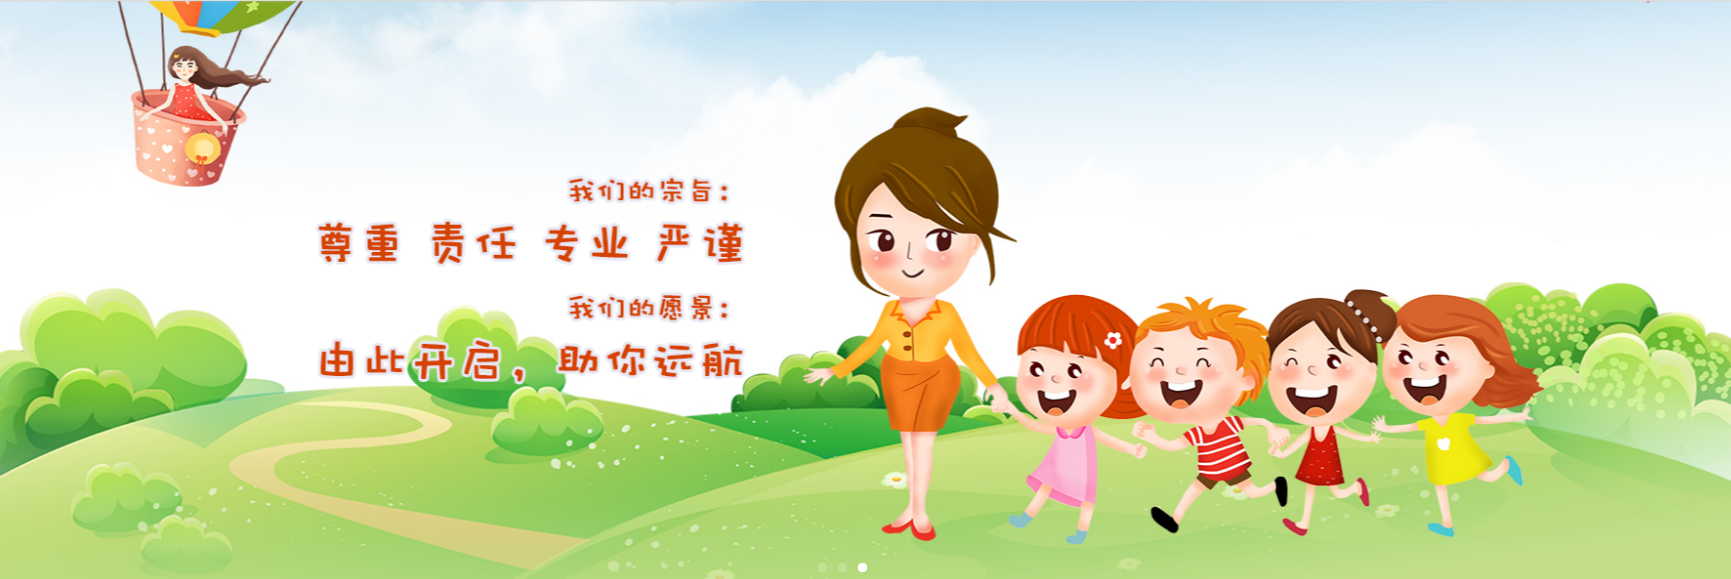 重庆海纳星儿童康复中心